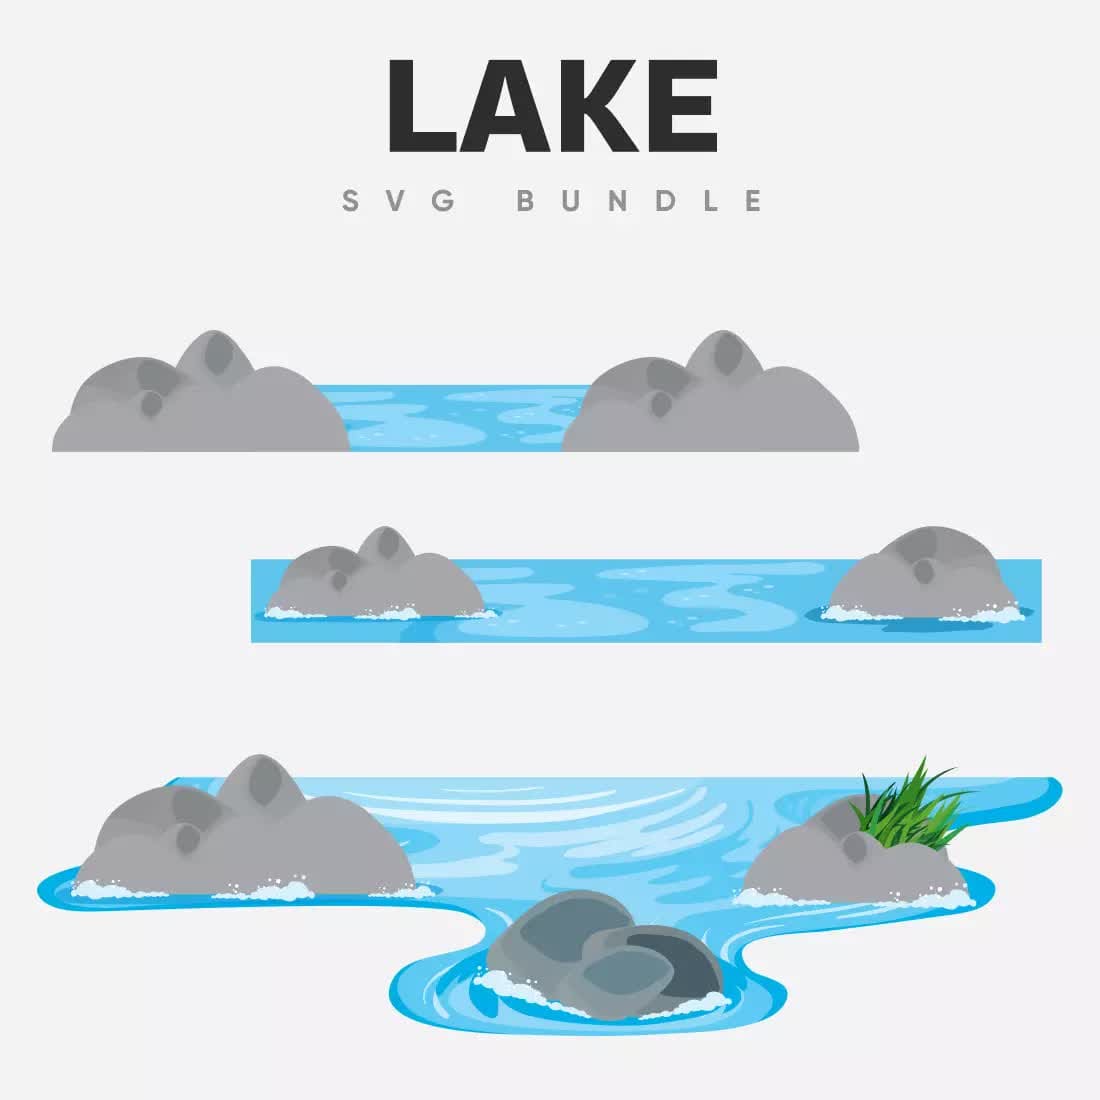 Lake SVG Bundle Preview 4.